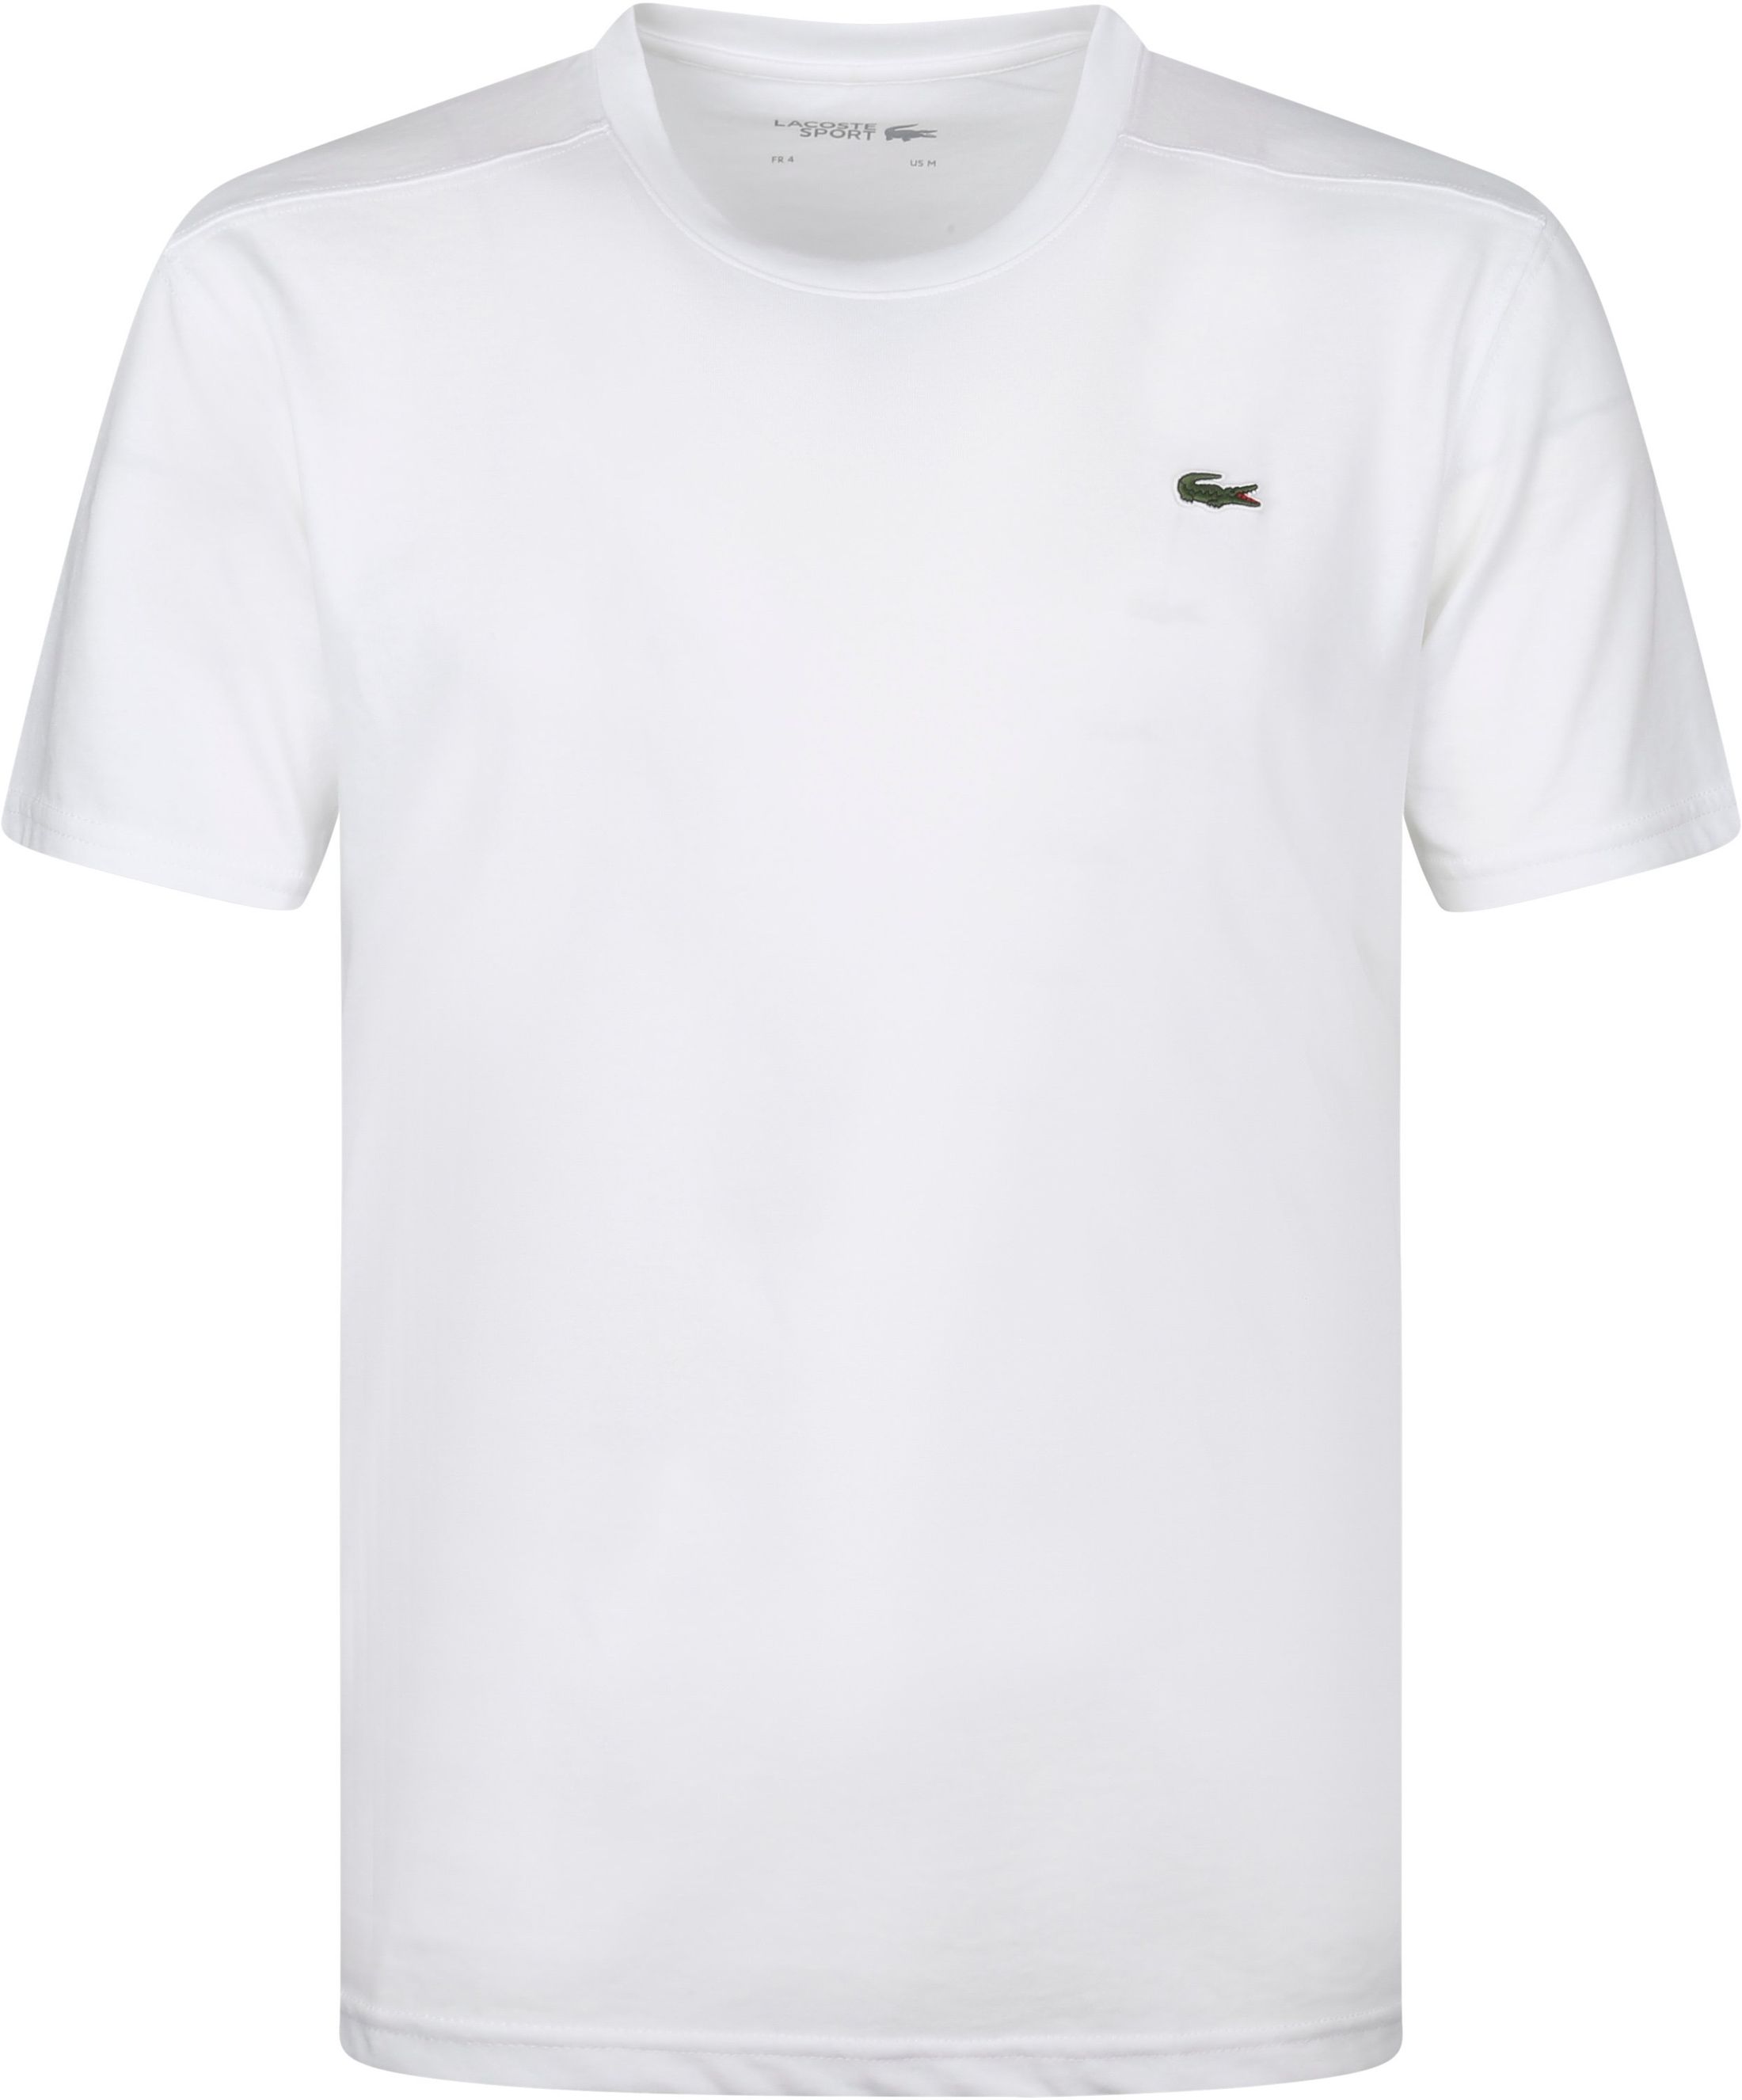 Lacoste T-Shirt White size L